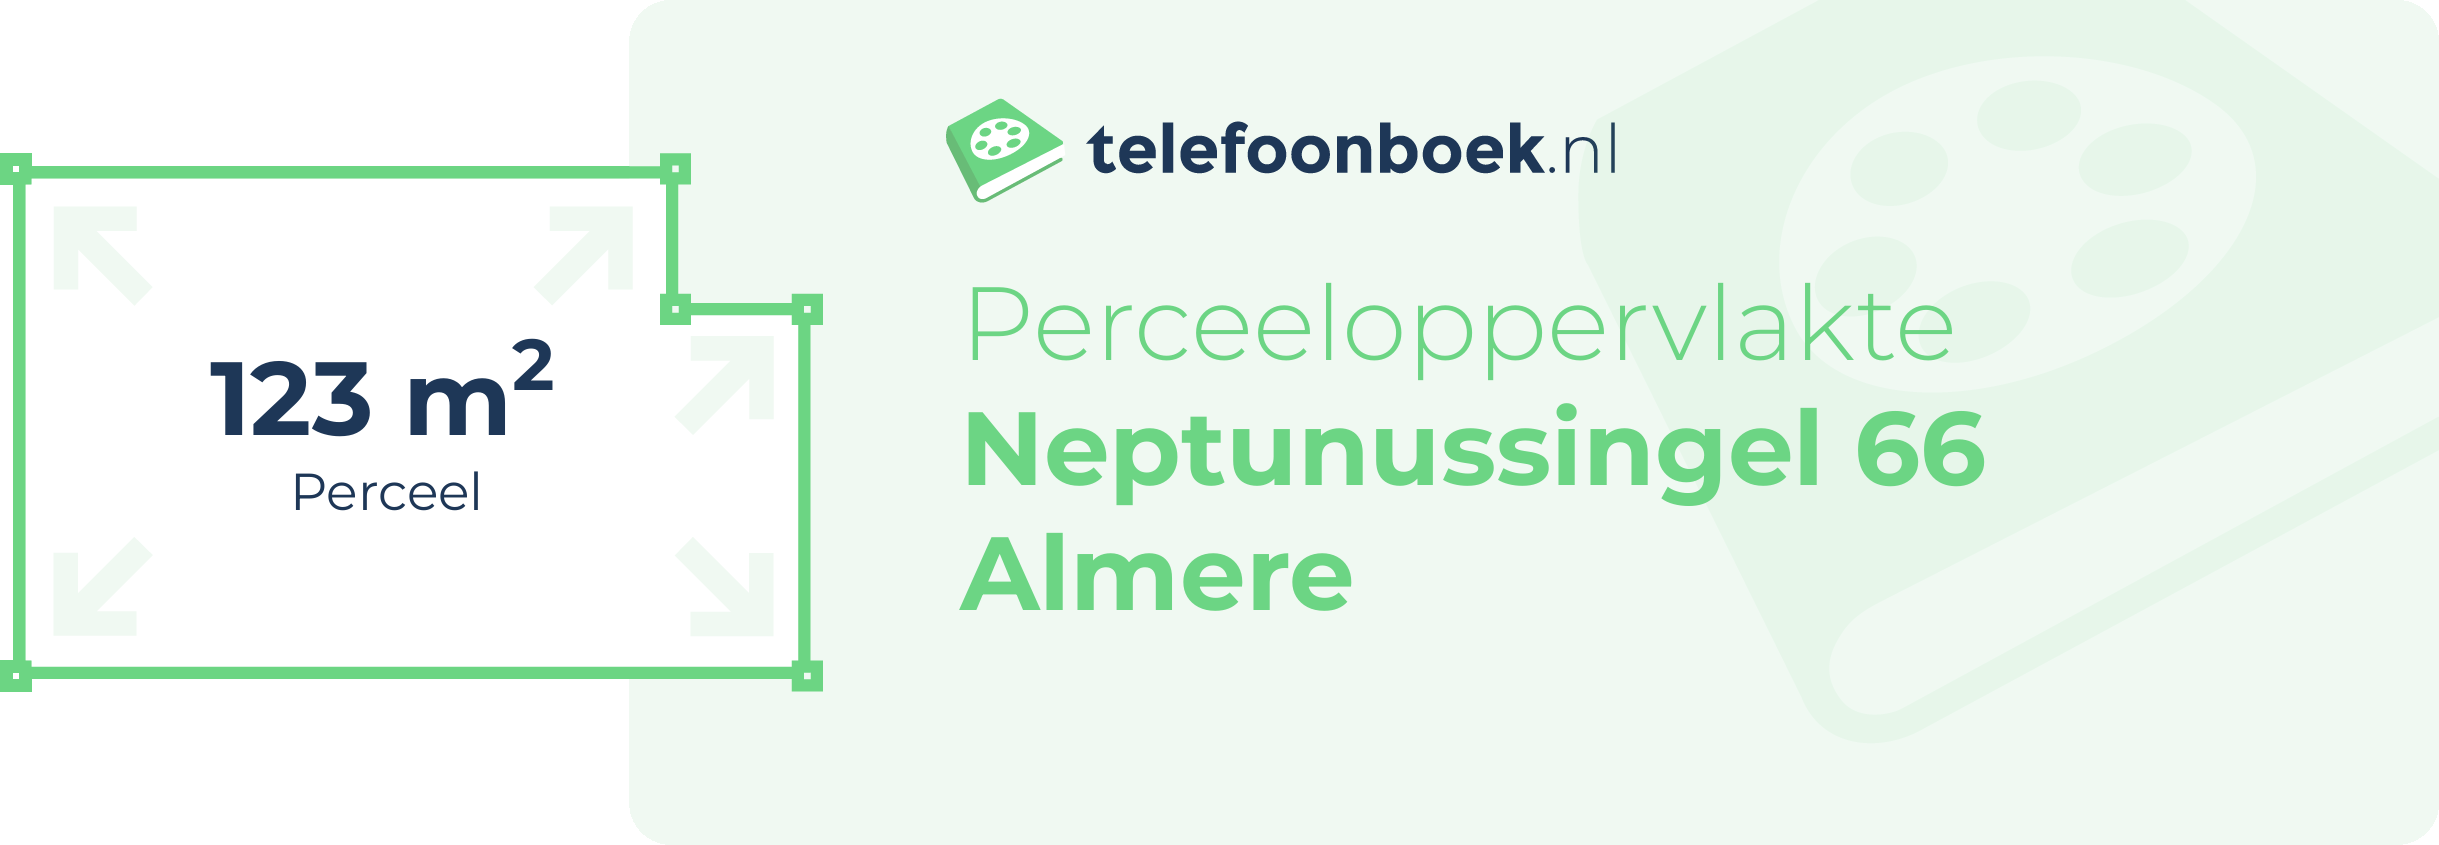 Perceeloppervlakte Neptunussingel 66 Almere